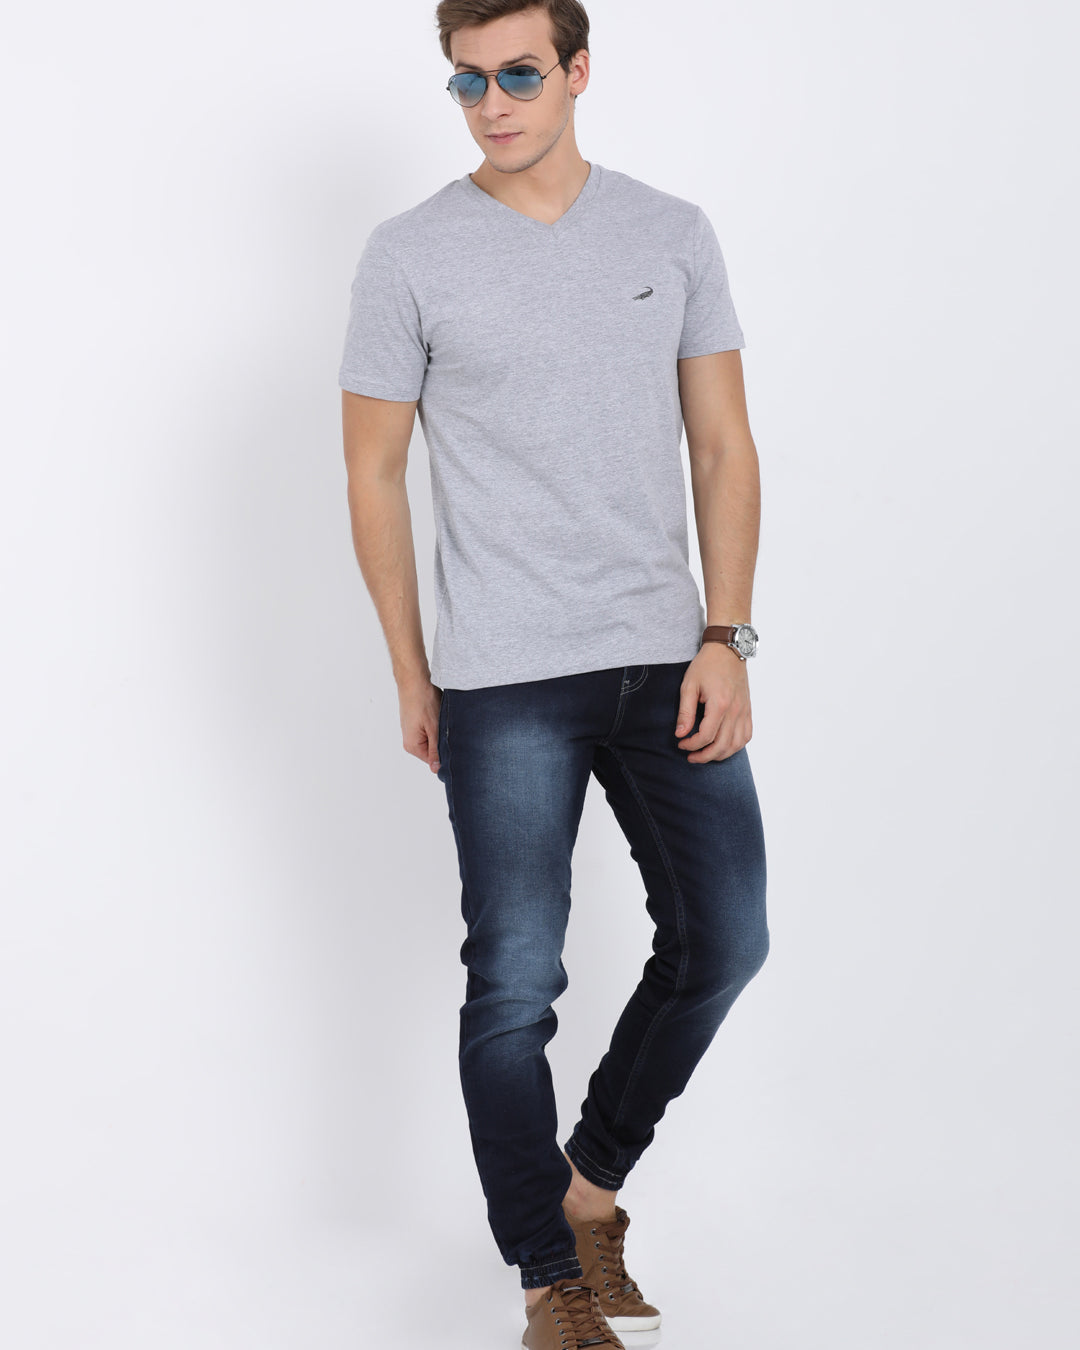 Men's Solid V Neck Half Sleeve Cotton T-Shirt - GREY MELANGE